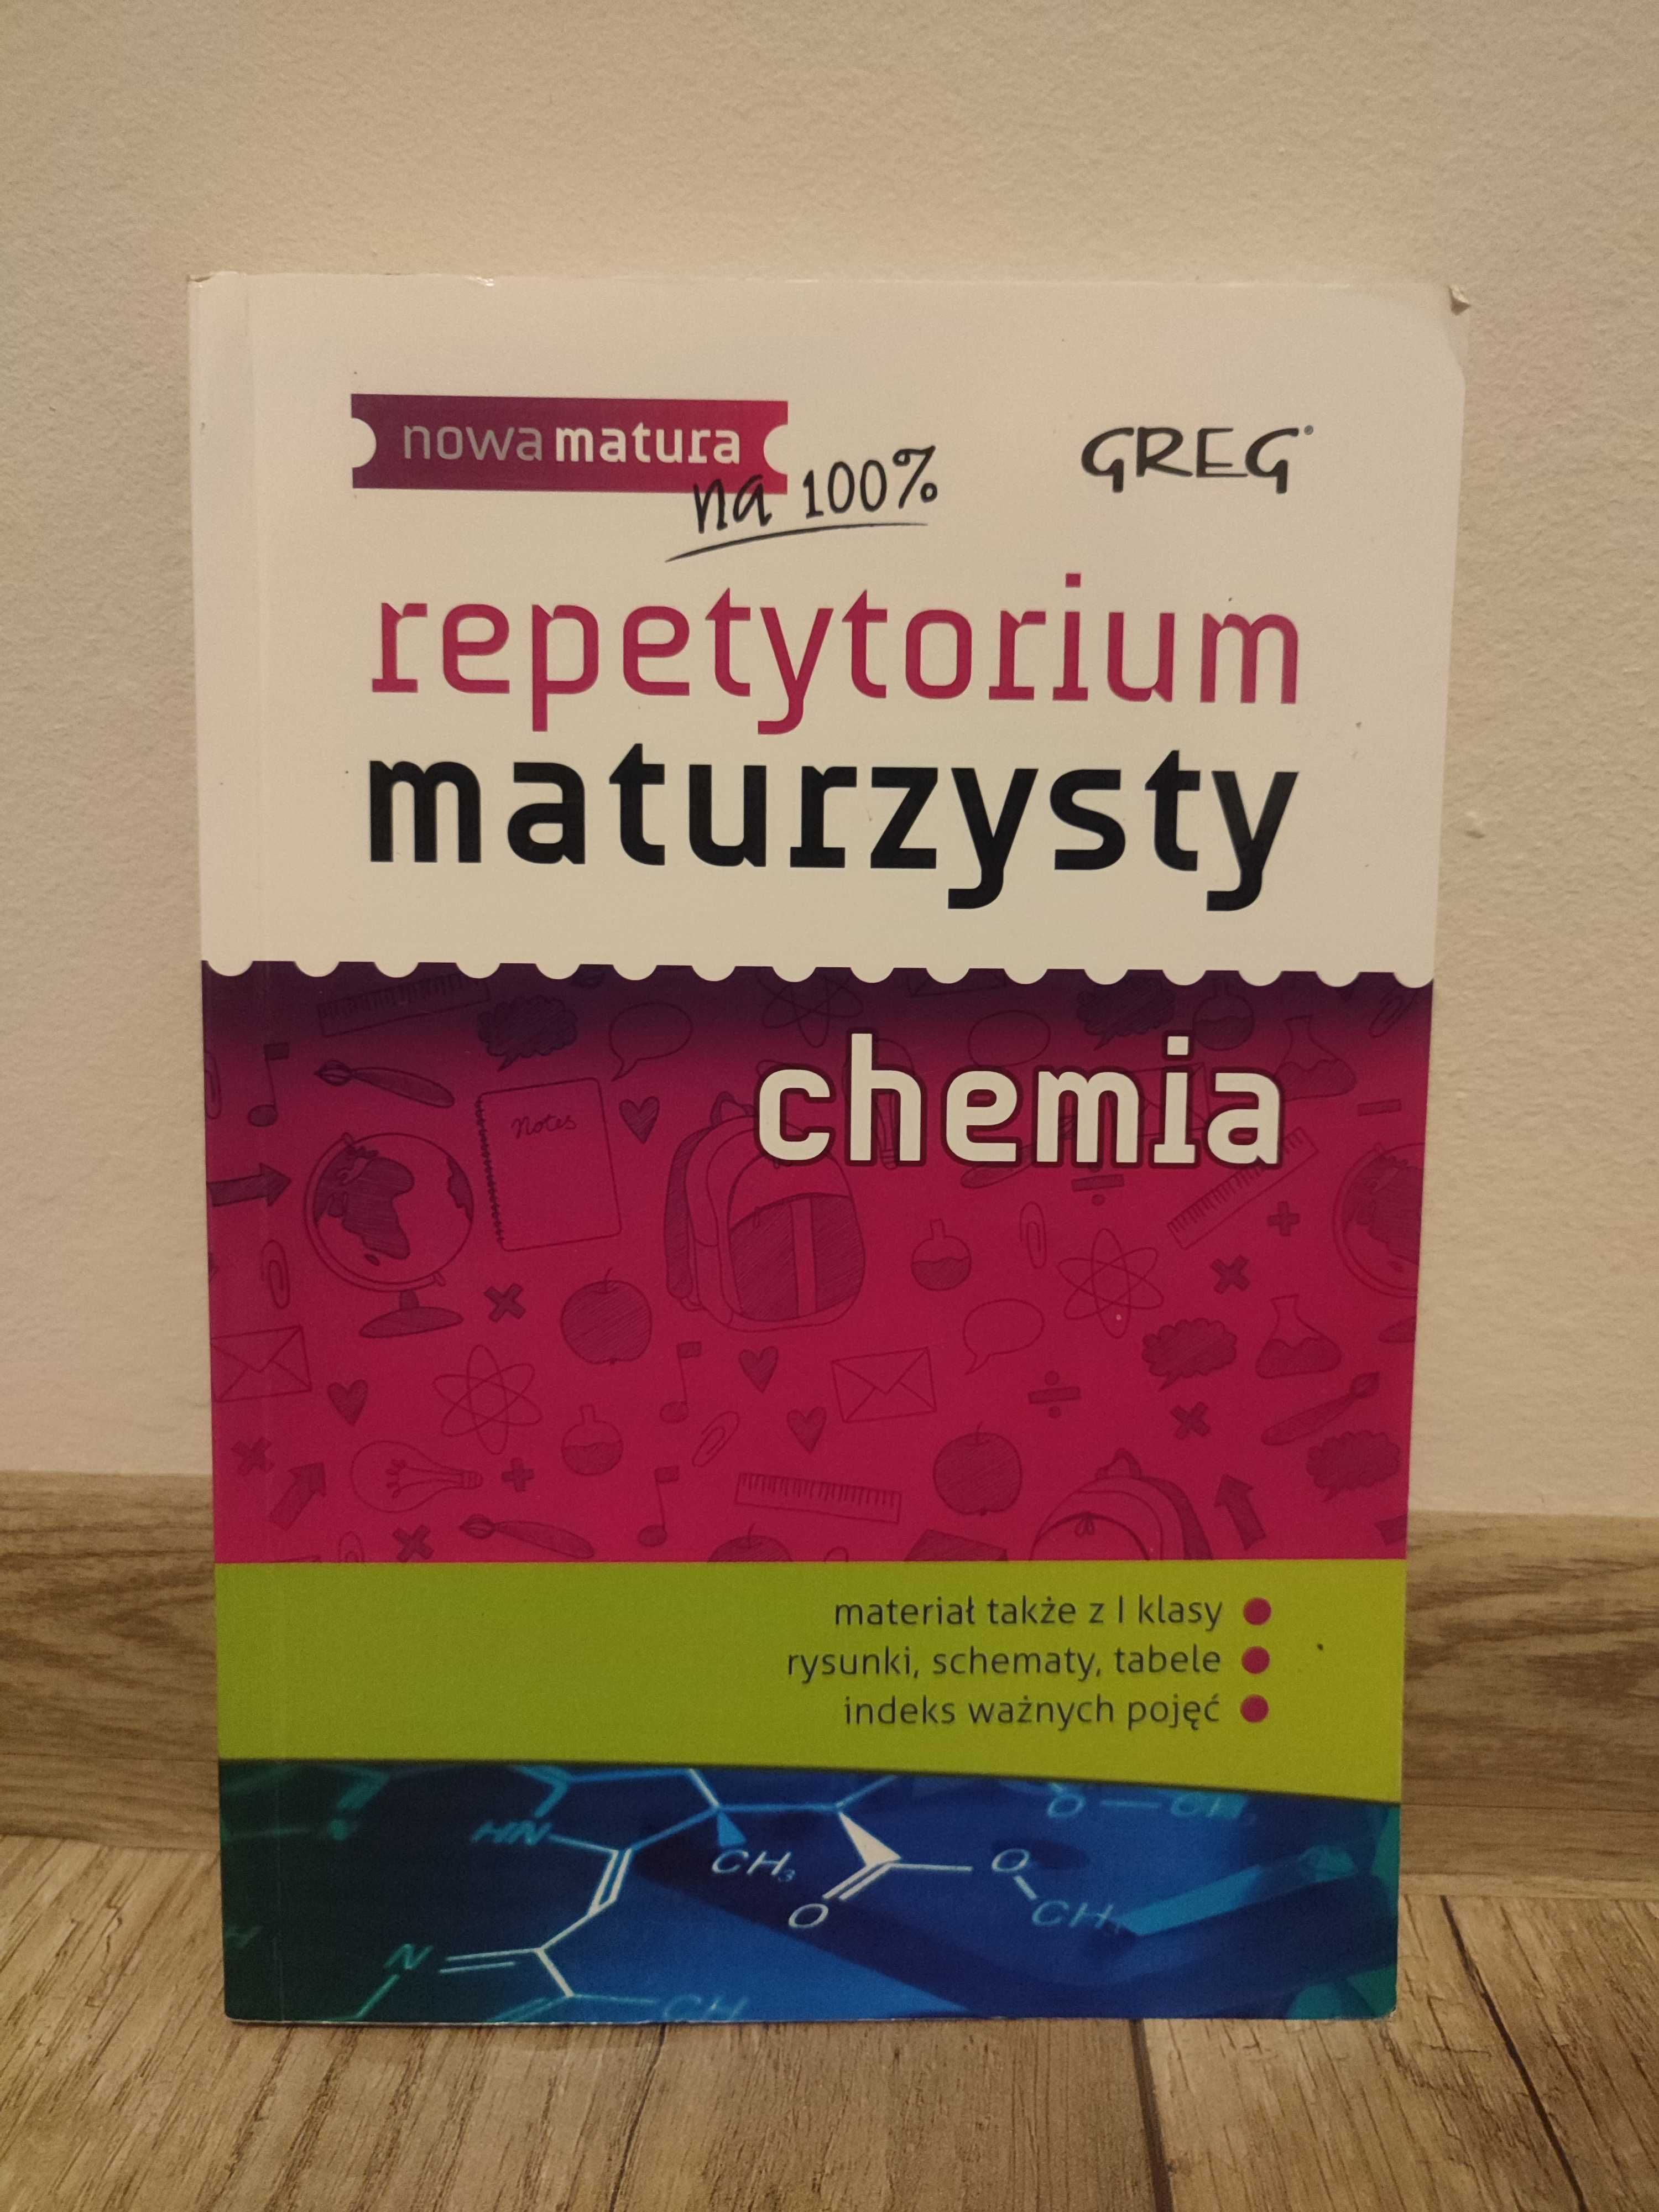 Sprzedam repetytorium maturzysty chemia